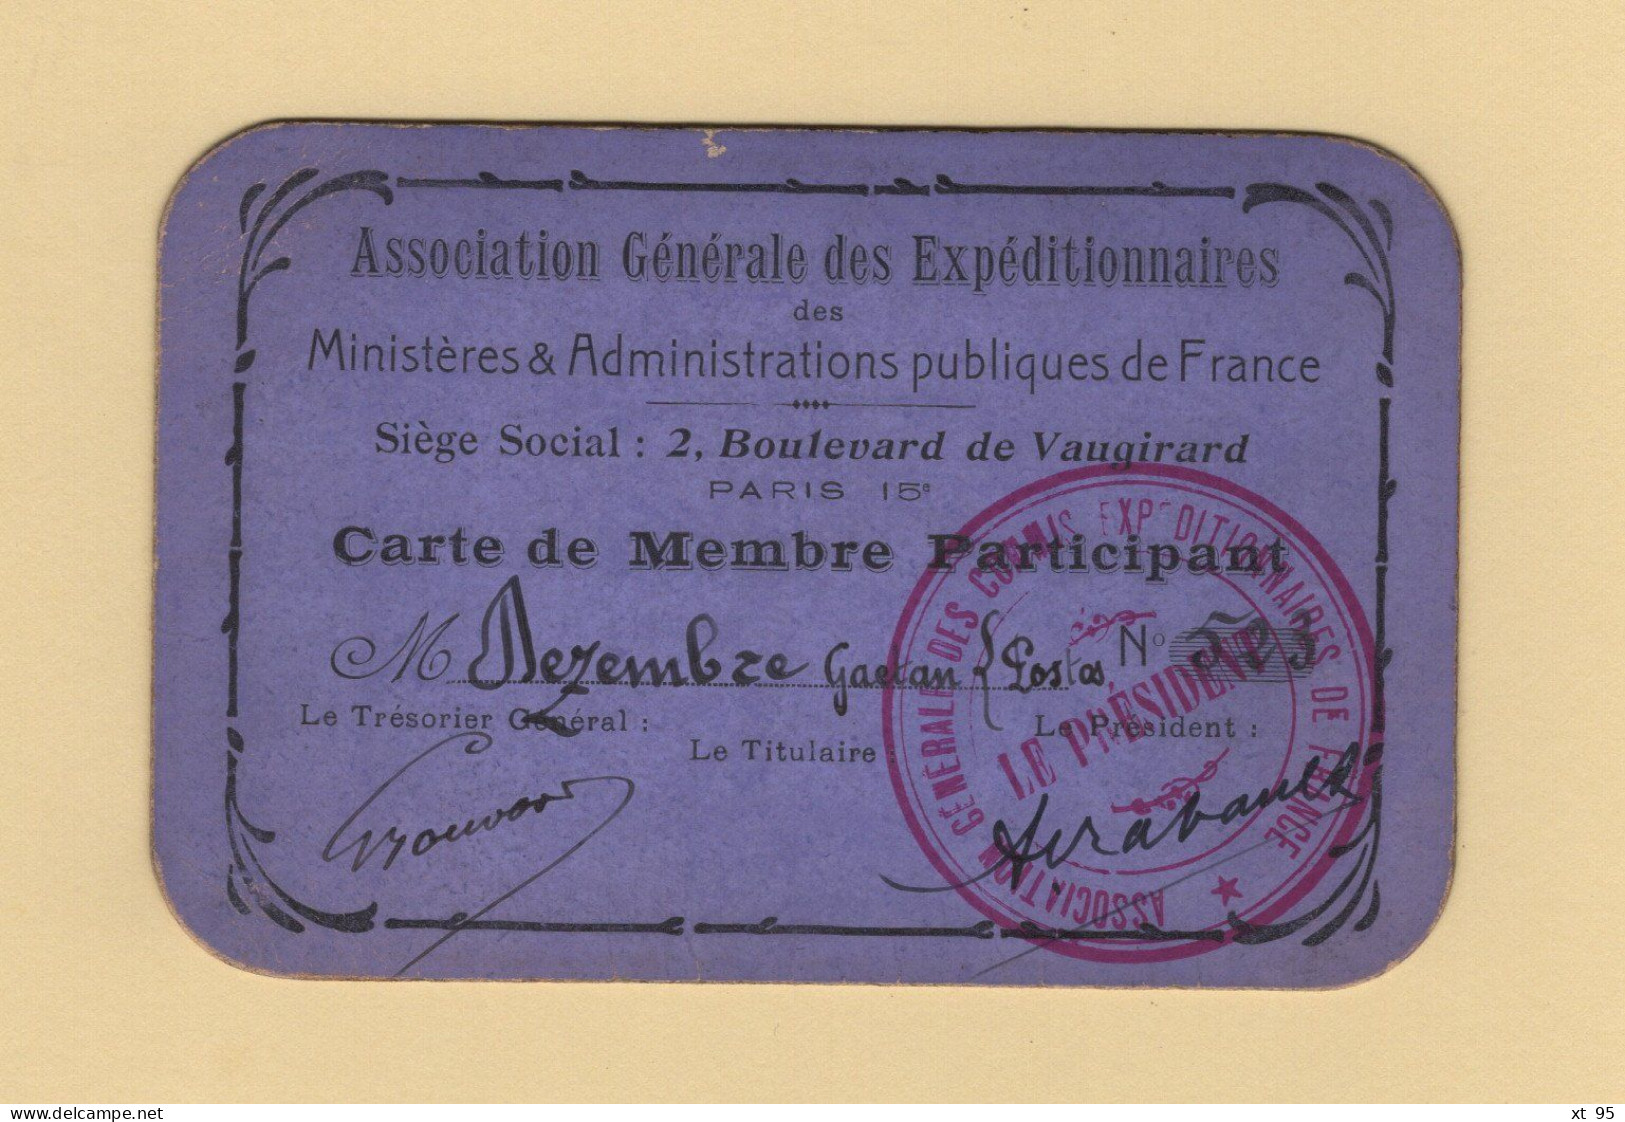 Carte De Membre Participant - Association Generale Des Expeditionnaires - Commis Expeditionnaire - Postes - Mitgliedskarten